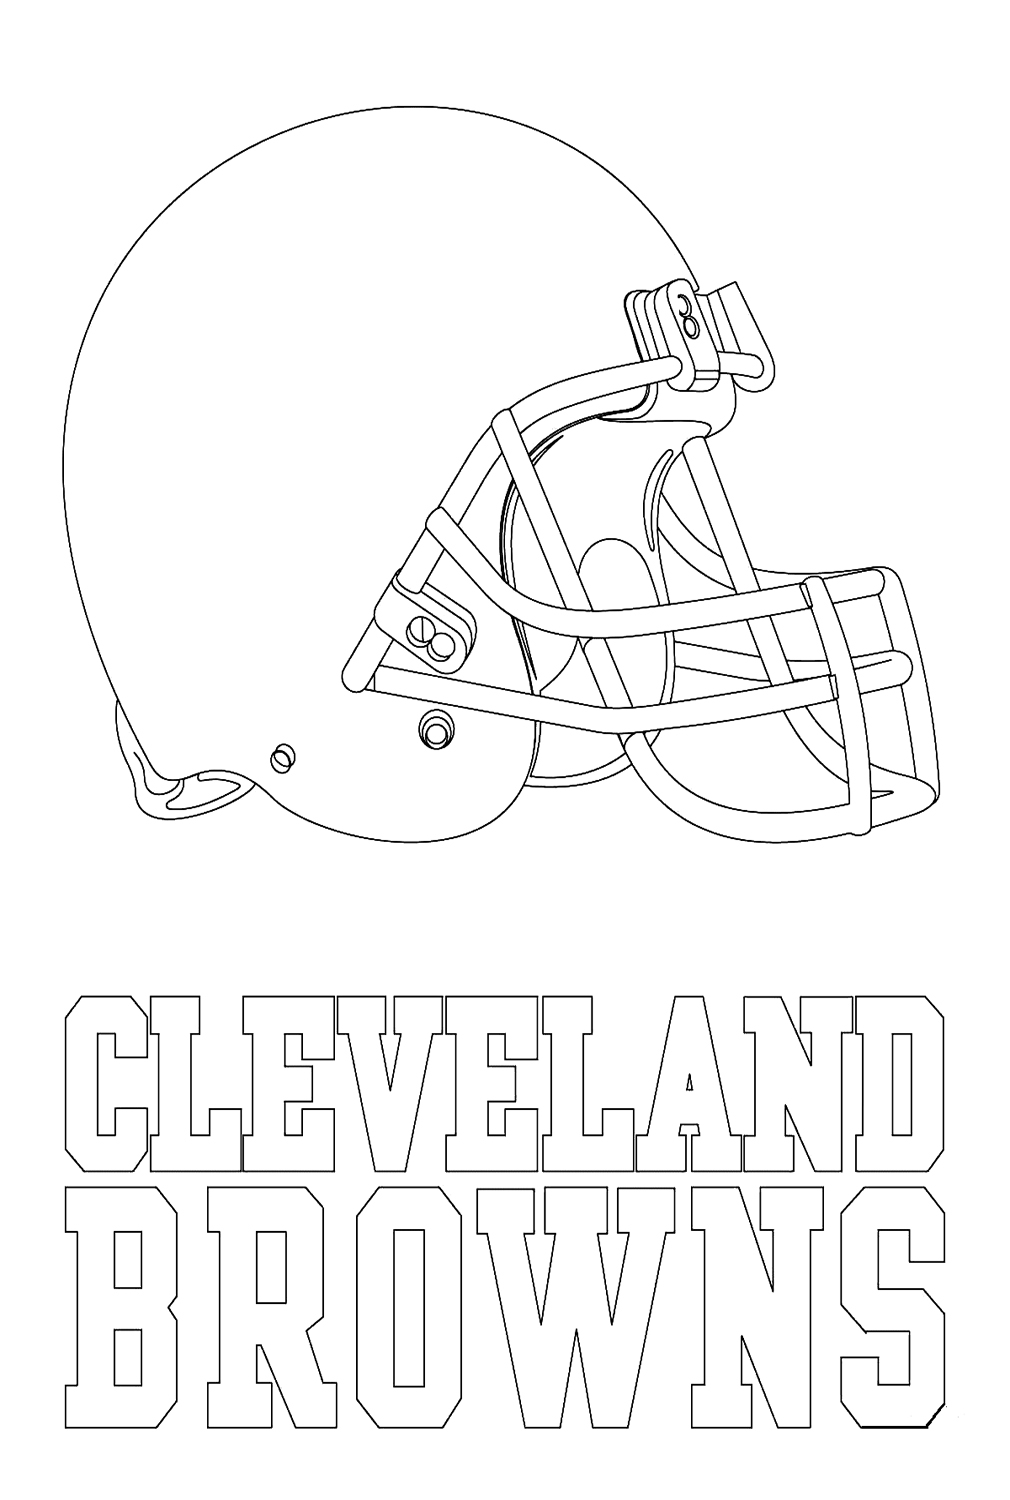 شعار كليفلاند براونز من اتحاد كرة القدم الأميركي